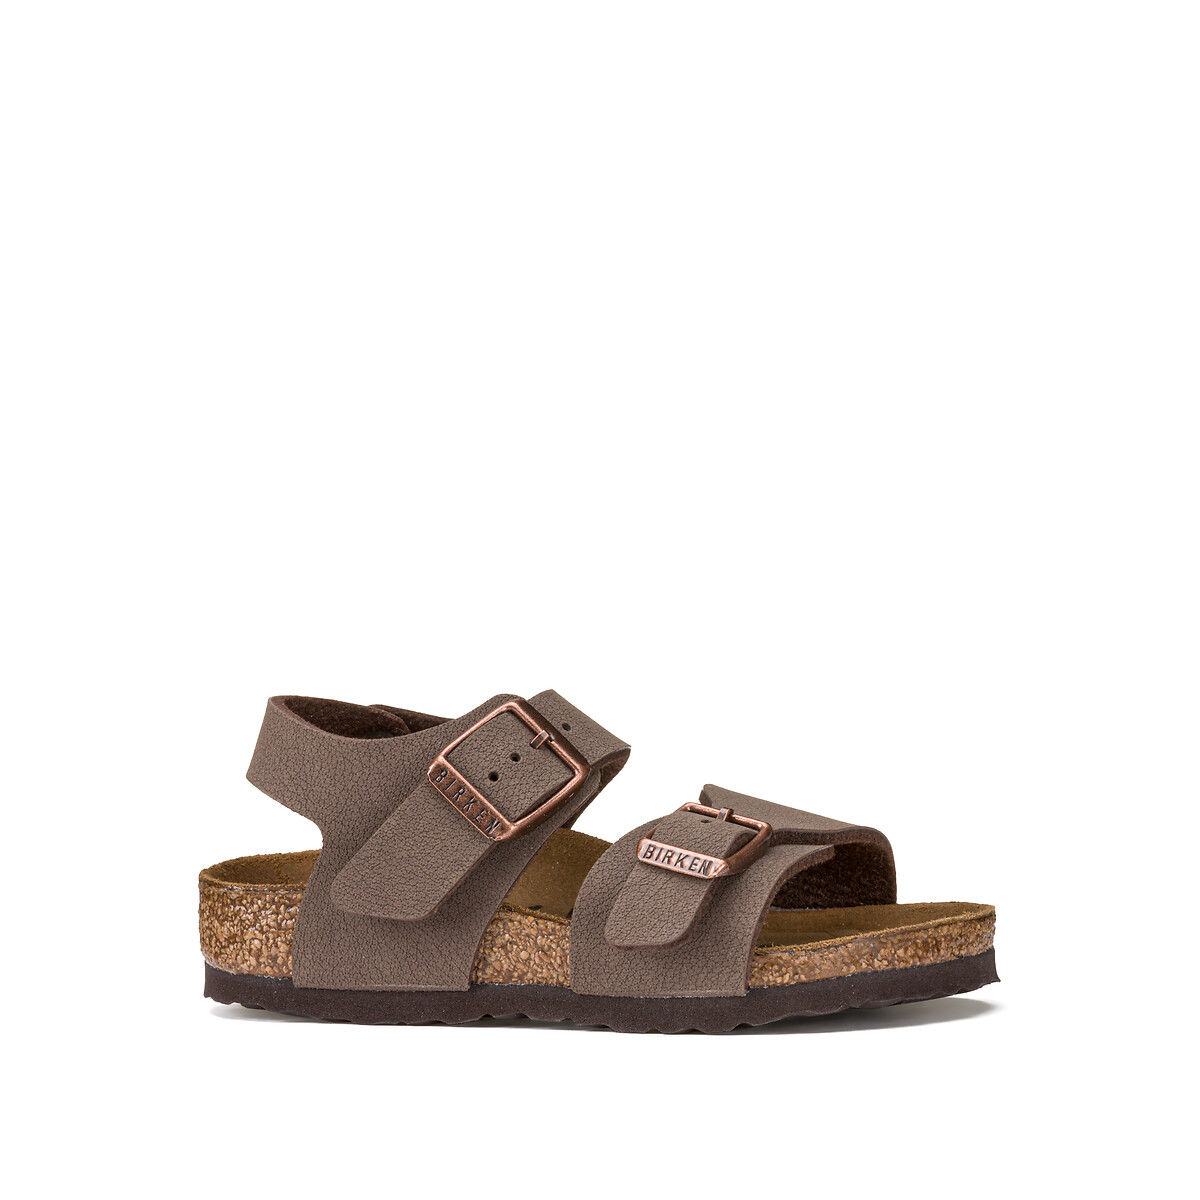 Kids new york sandals brown Birkenstock | Redoute